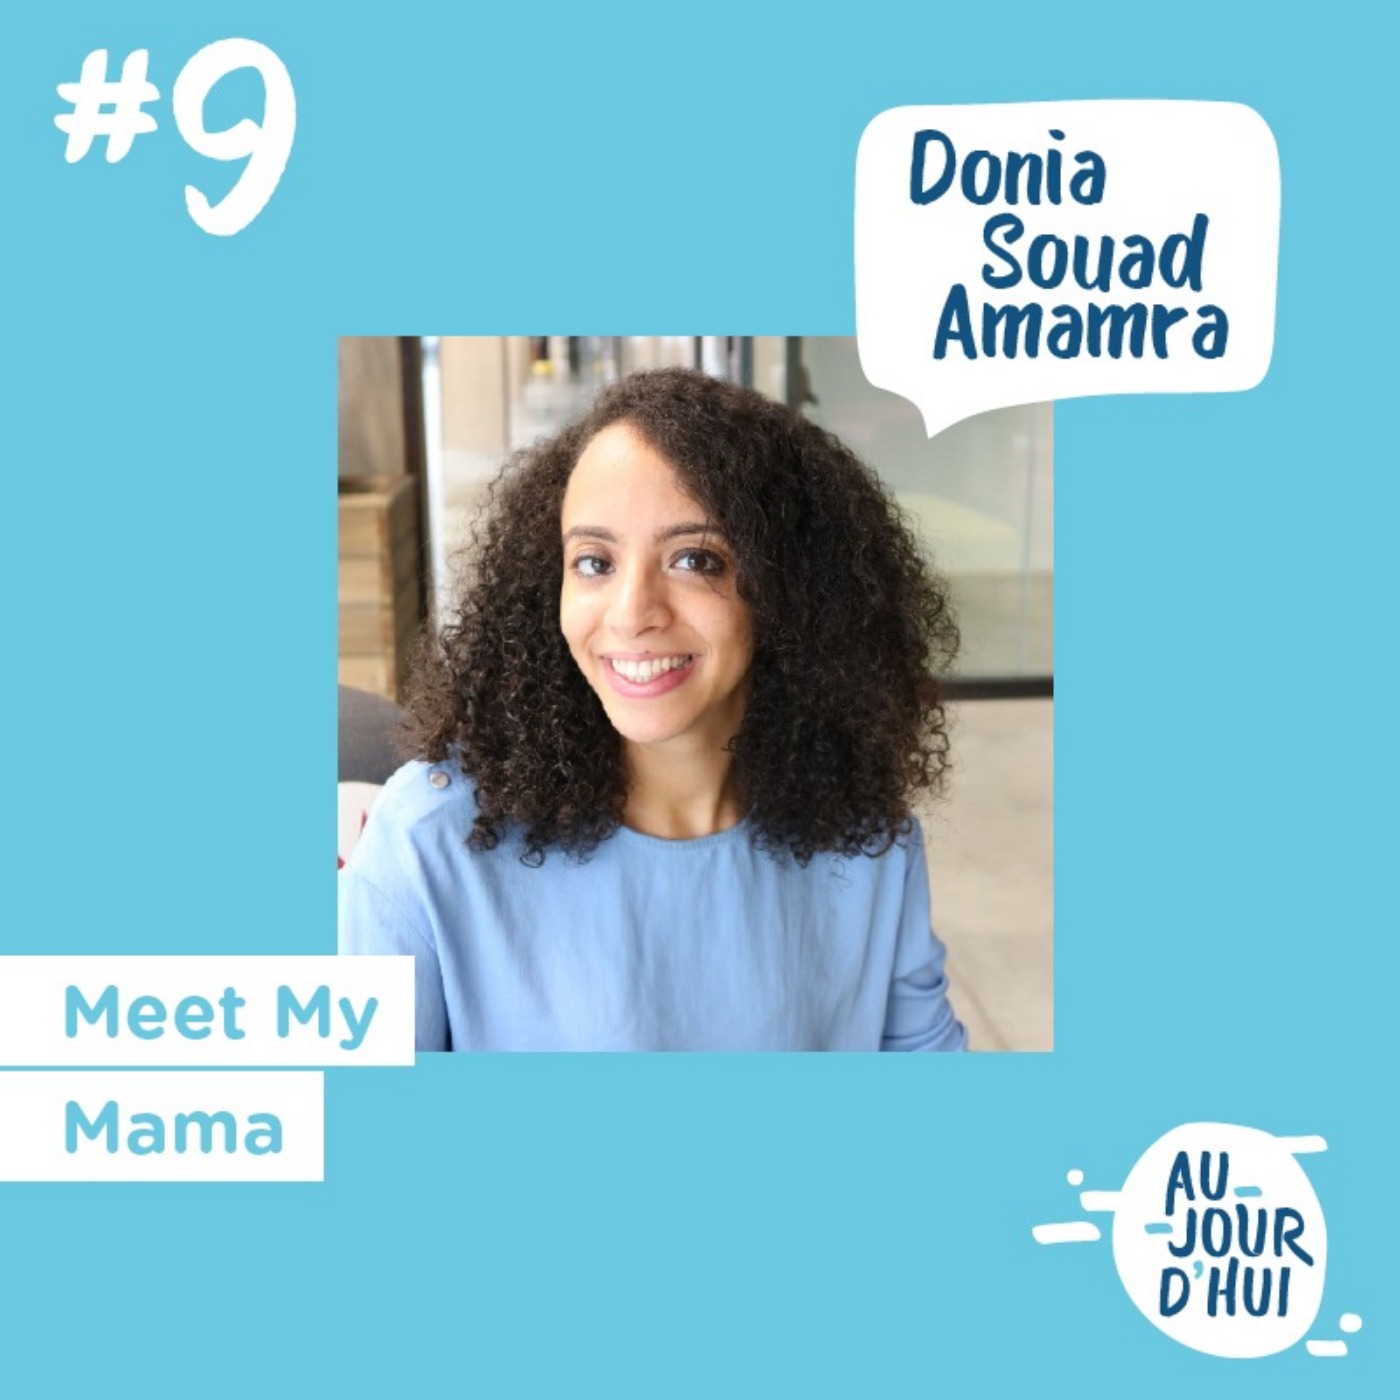 #9 Donia Souad Amamra (Meet My Mama) : “Tout le monde a le pouvoir de réaliser ses rêves”